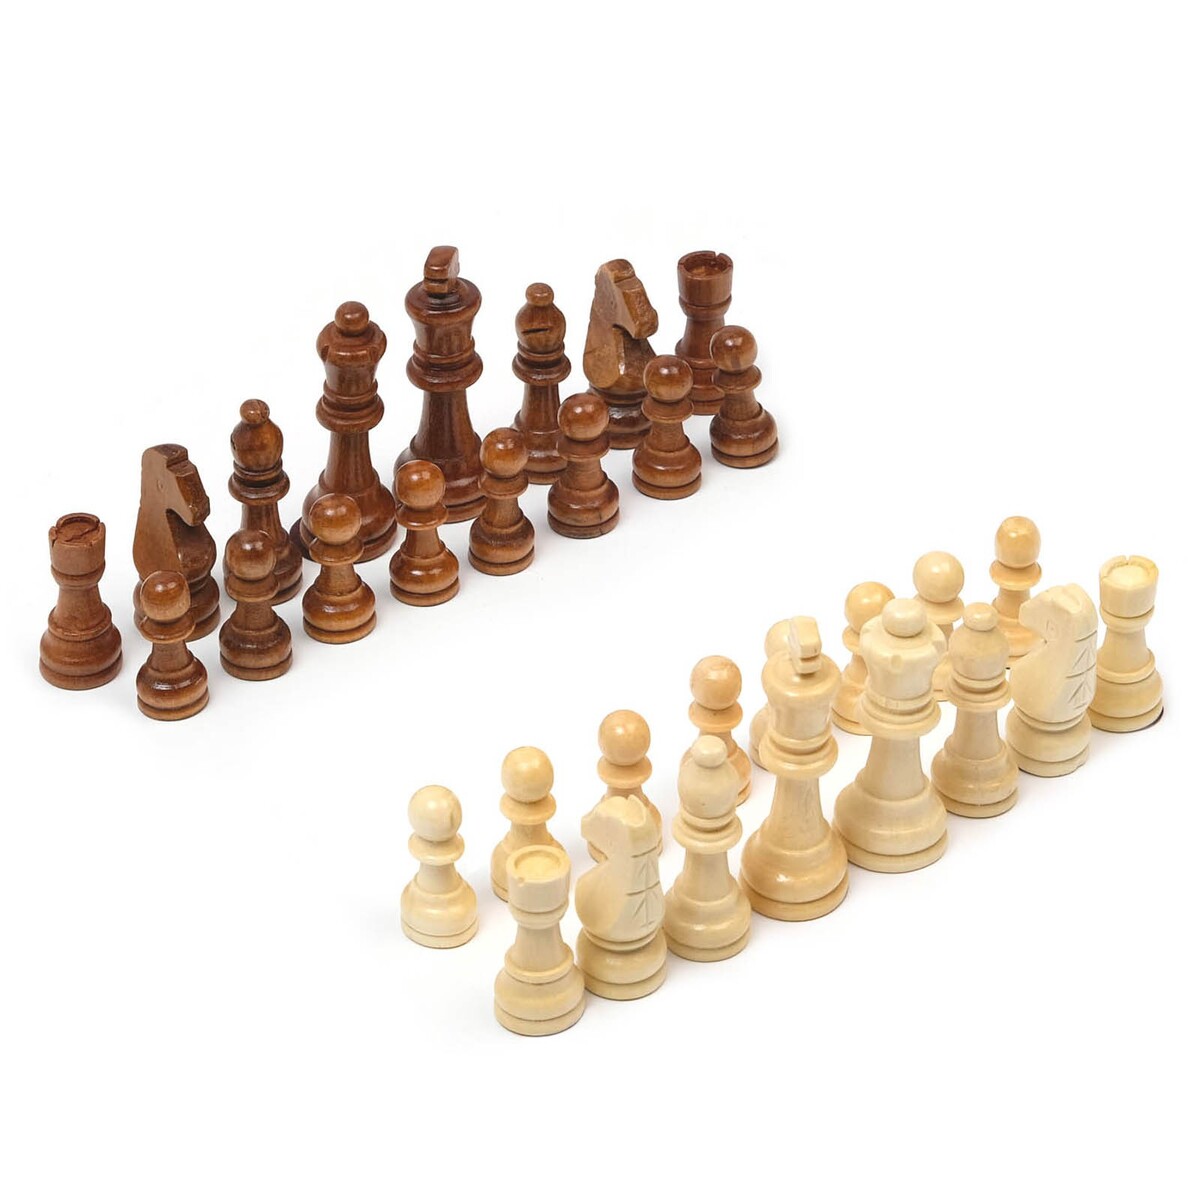 Шахматные фигуры, король h-9 см, пешка h-4 см стрекоза король и драконы